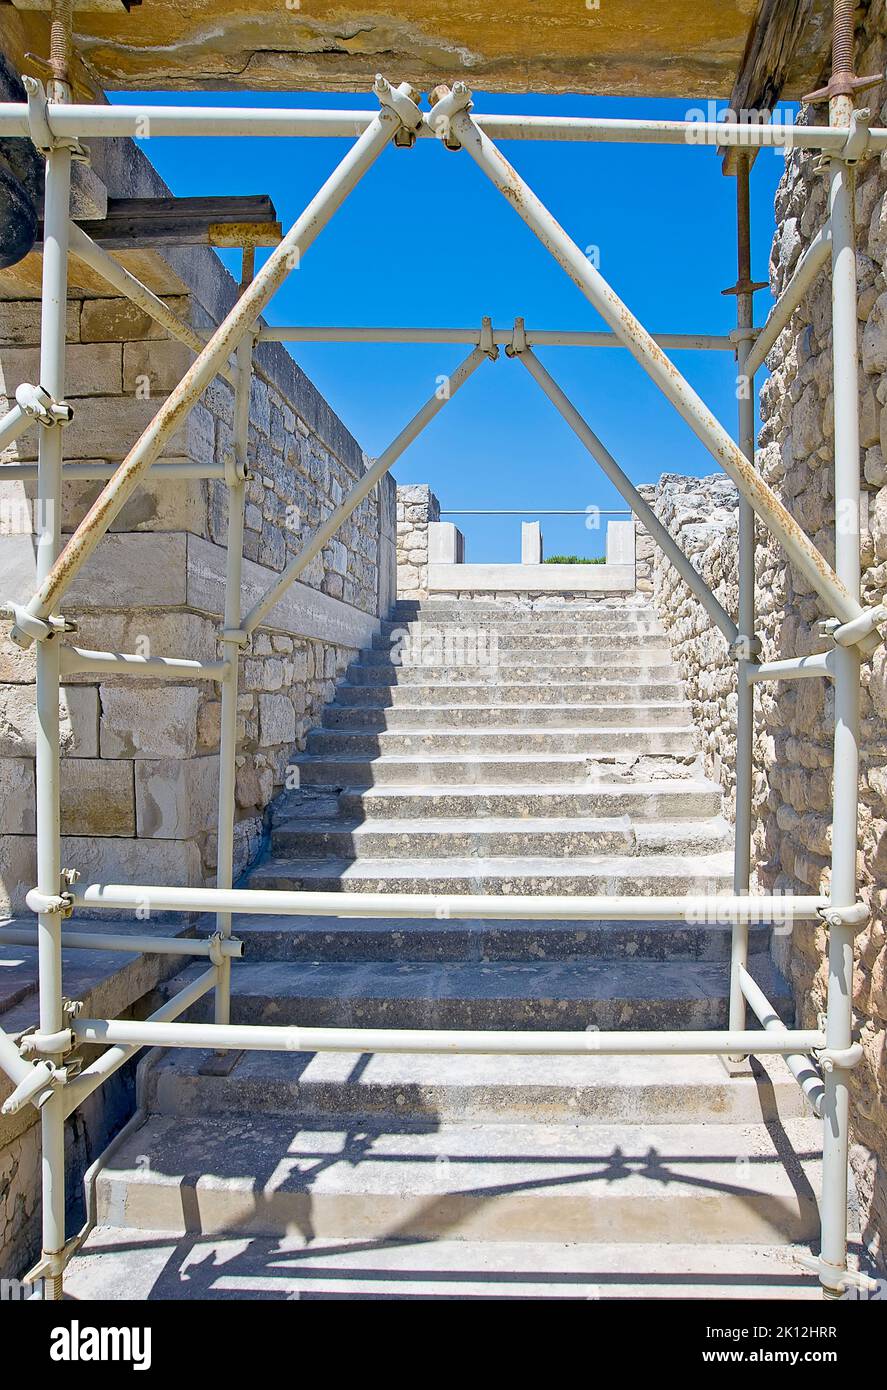 Teil des Knossos Minoan Palastes auf Kreta, Griechenland, wird weiter restauriert Stockfoto